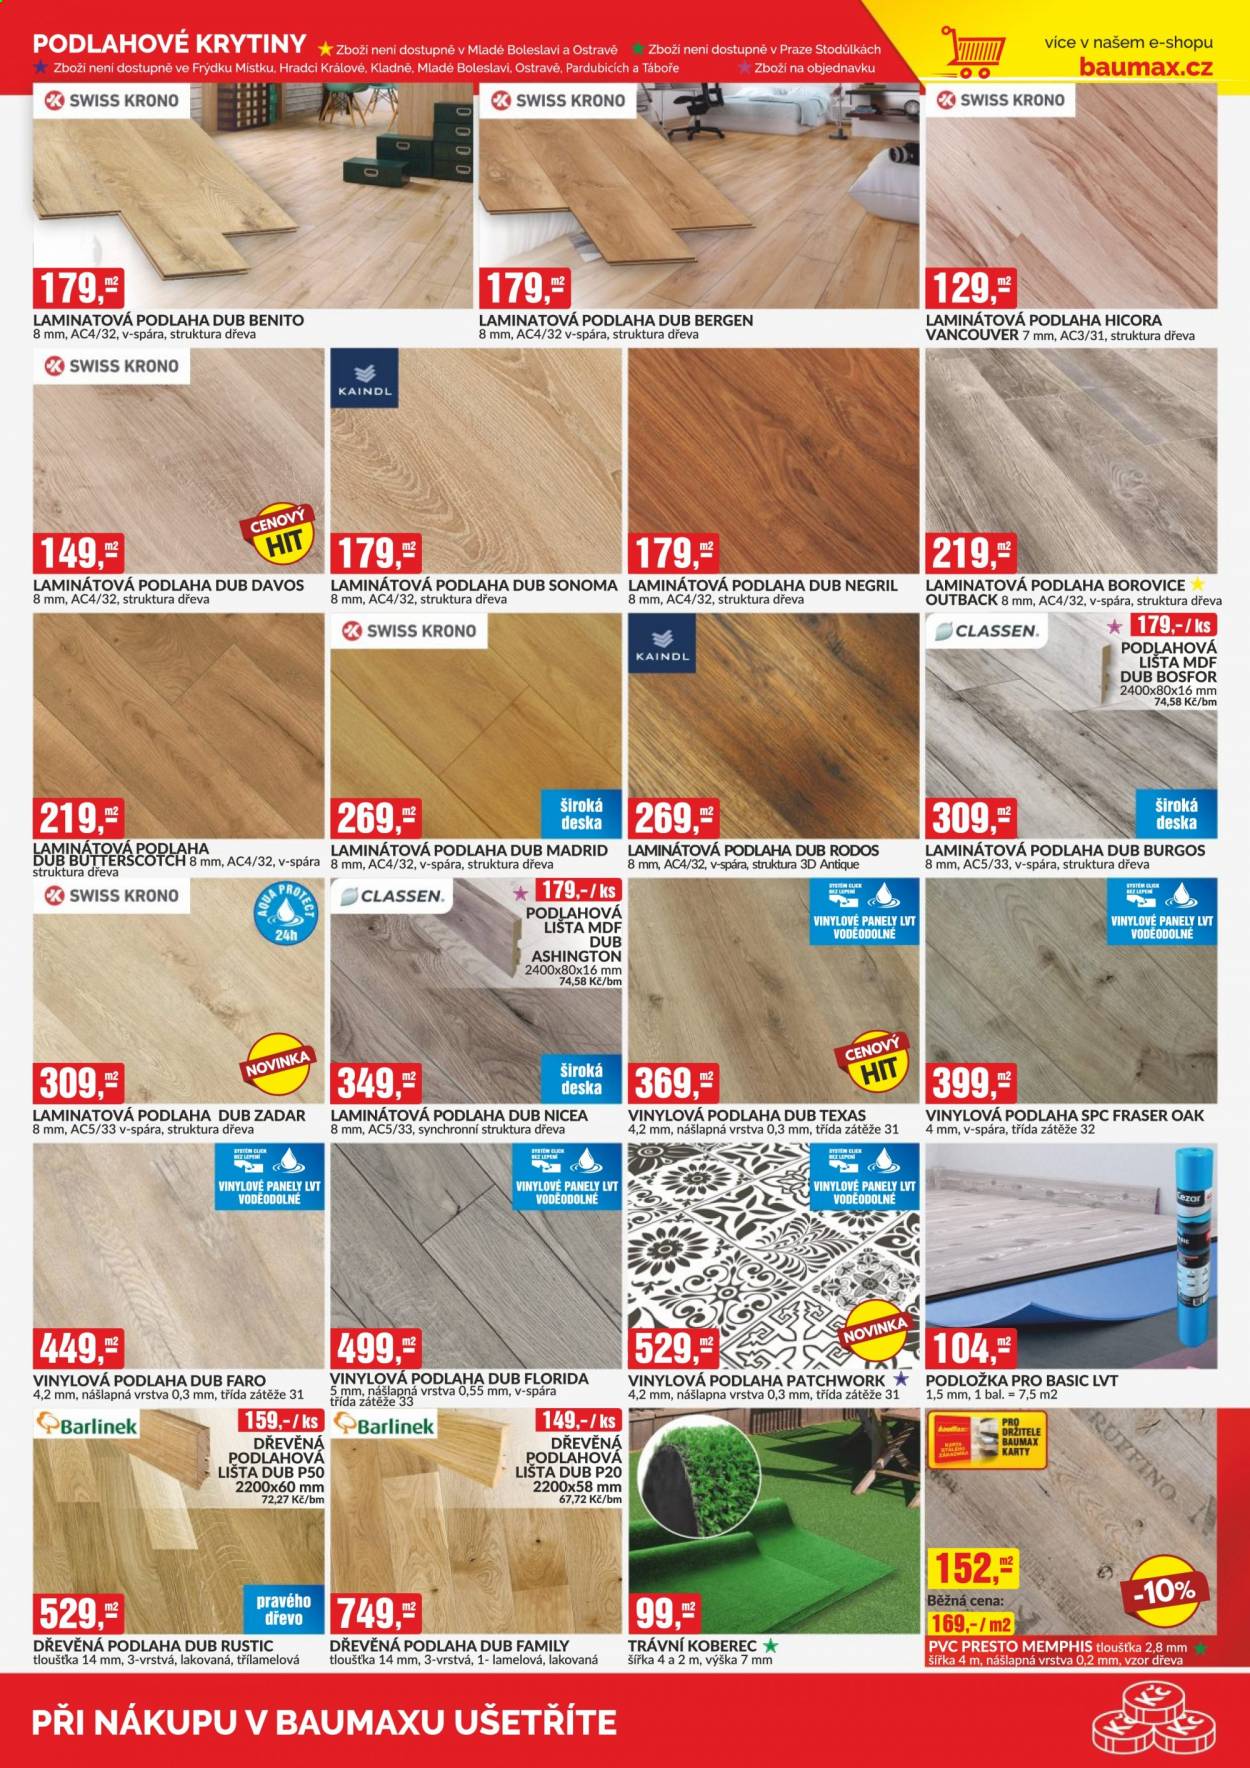 thumbnail - Leták Baumax - 1.3.2021 - 31.3.2021 - Produkty v akci - deska, podlahová lišta, podlahové krytiny, podlaha, dřevěná podlaha, vinylová podlaha, laminátová podlaha, podložka, travní koberec. Strana 13.